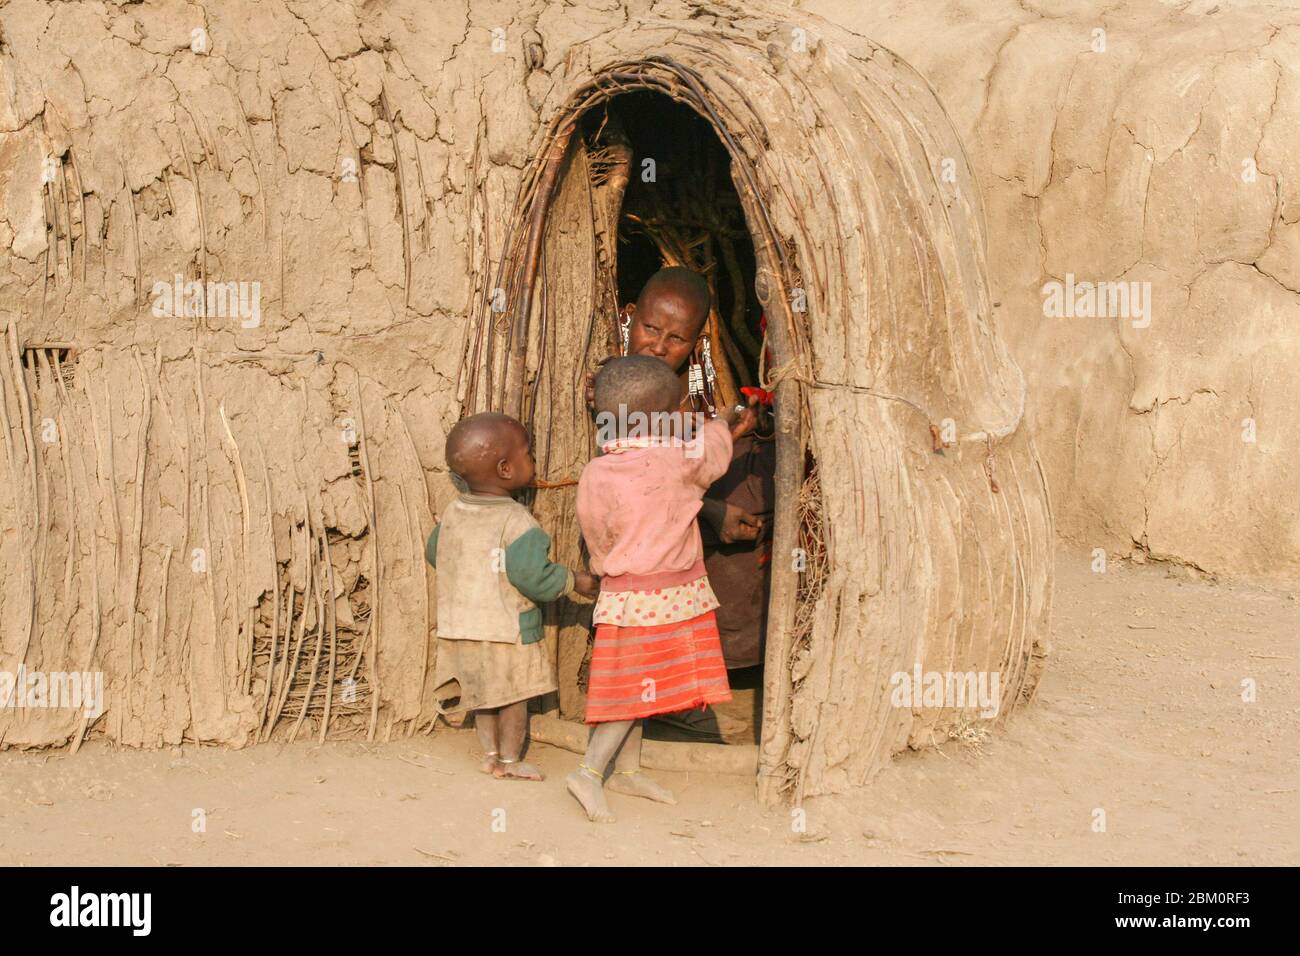 Jeune enfant de Maasai à l'entrée d'une hutte. Maasai est un groupe ethnique de personnes semi-nomades photographiées au Kenya Banque D'Images